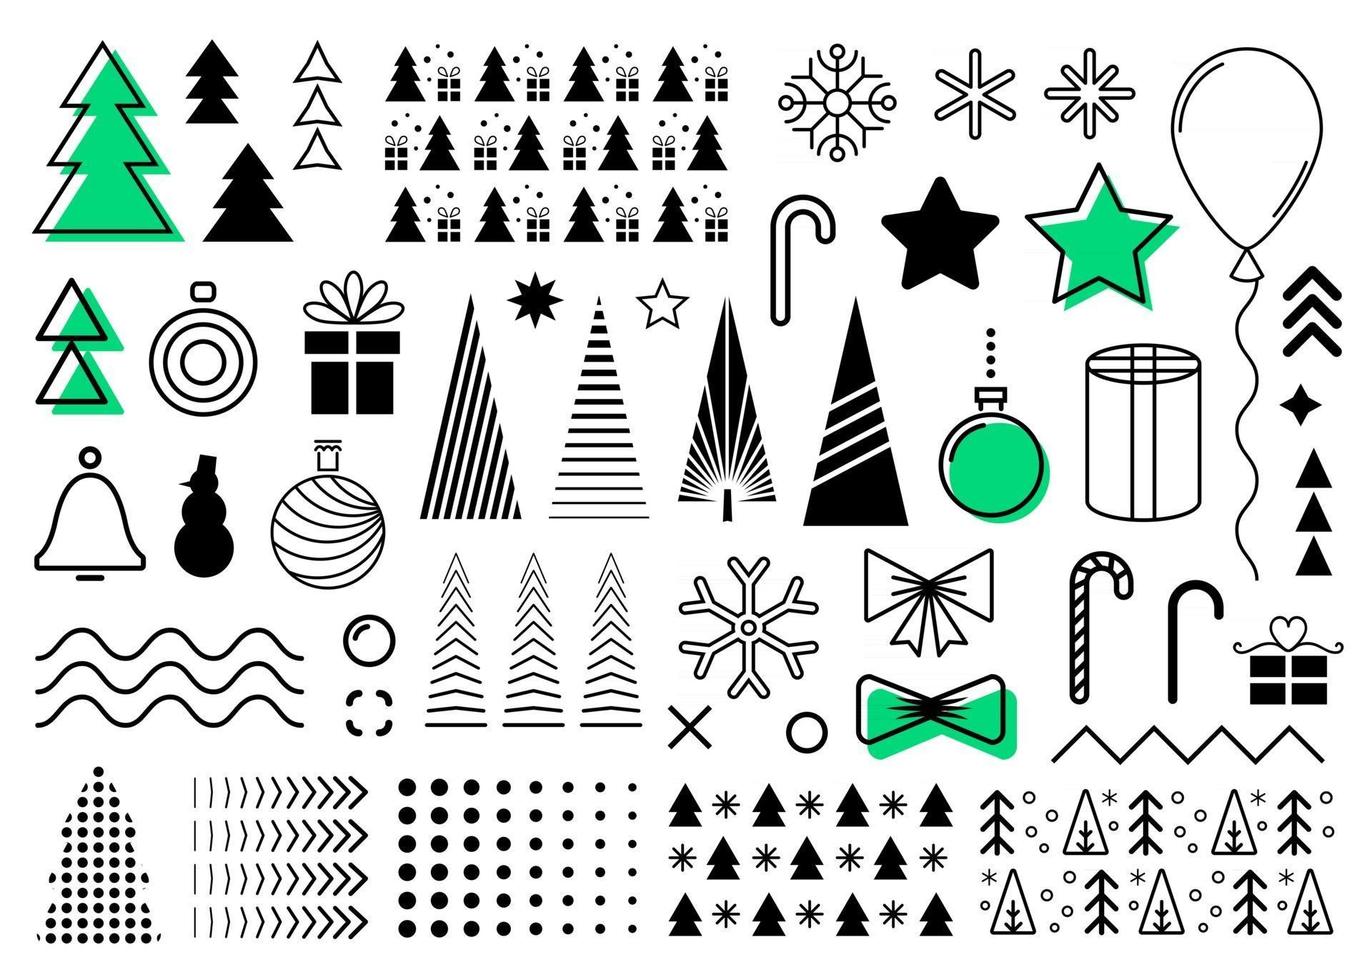 vektor jul designelement set. samling av jul memphis svart abstrakt platta former. dekorativ layoutkollektion för din nyårsdesign som flygblad, banners, broschyrer, omslag, vykort